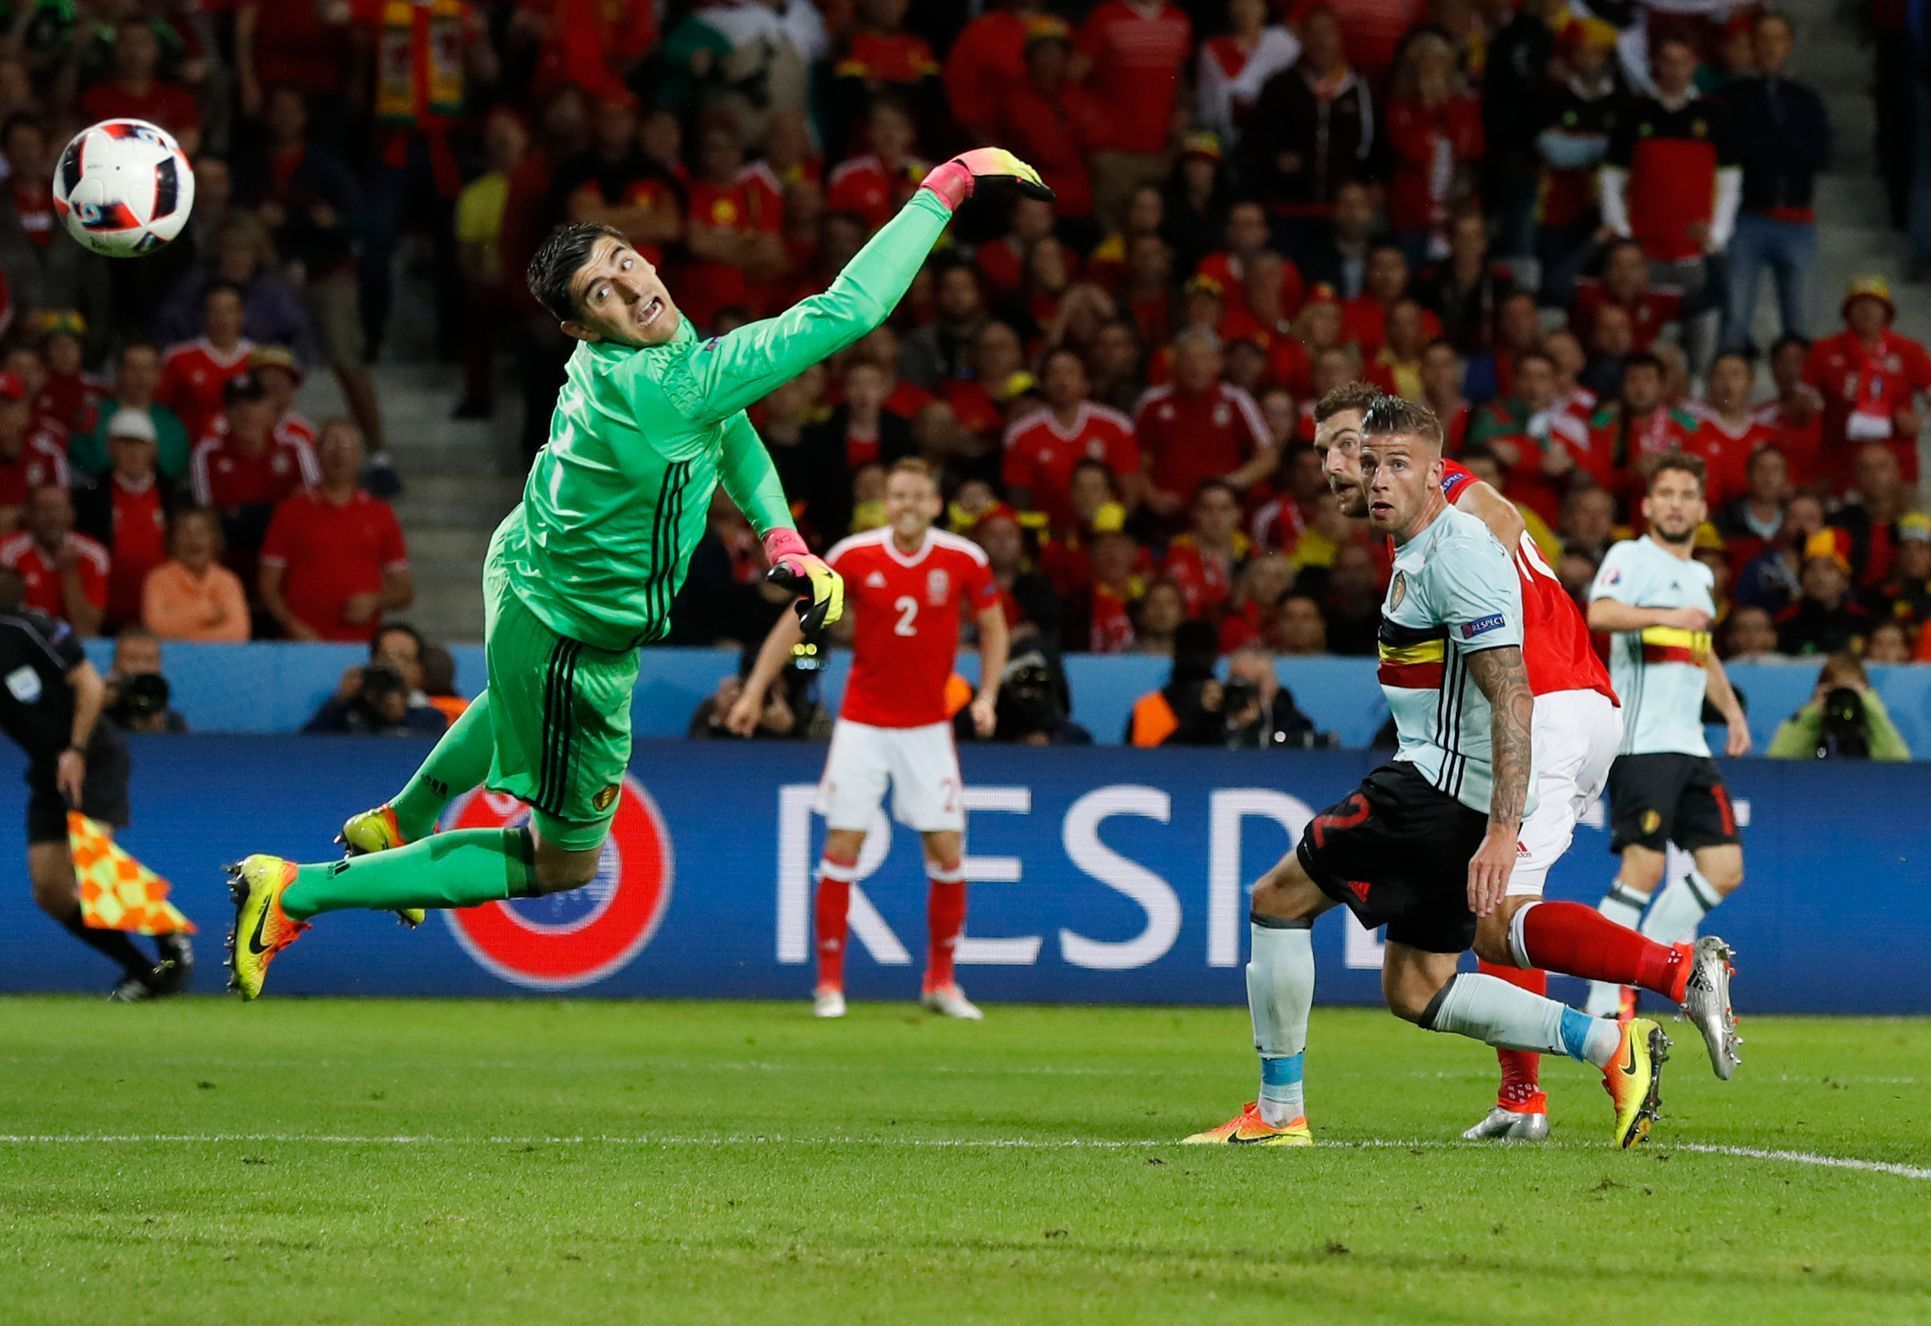 Euro 2016, Wales-Belgie: Sam Vokes dává gól na 3:1